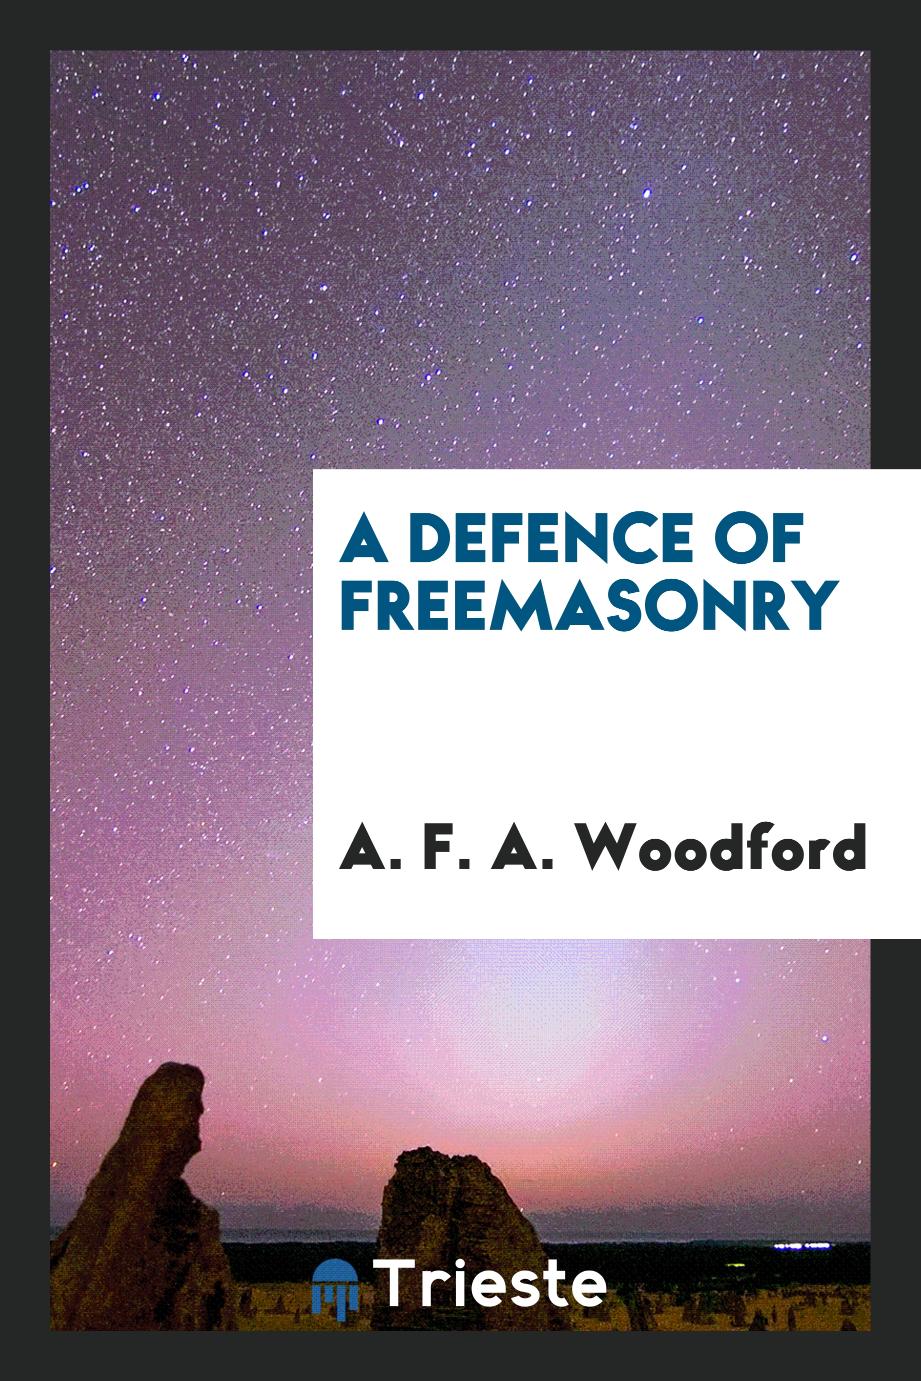 A defence of freemasonry